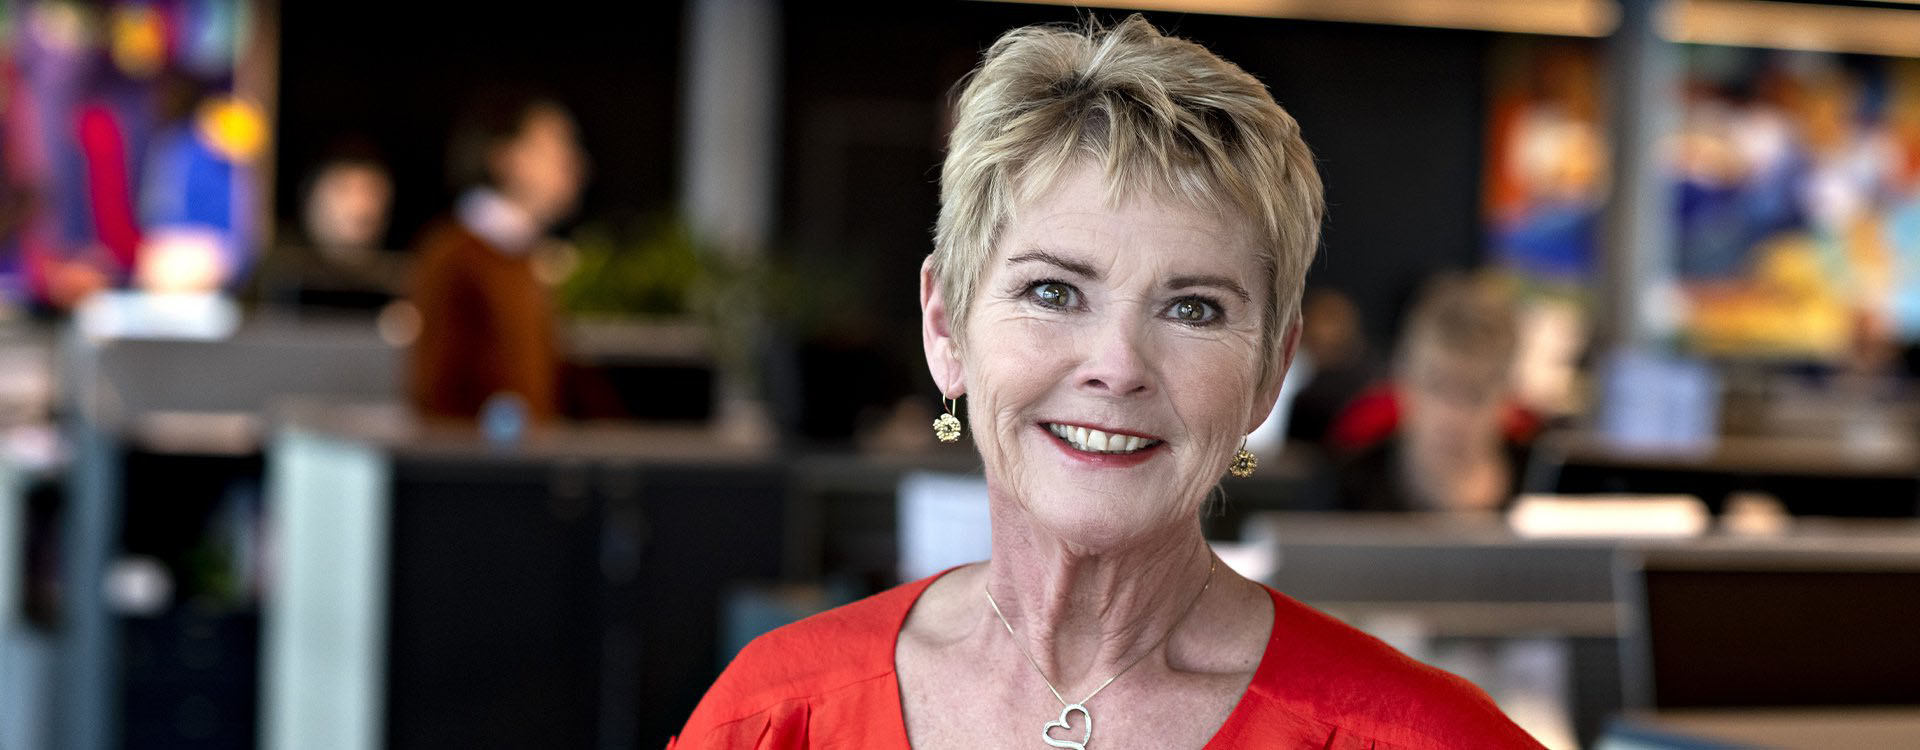 I 2015 blev Lizette Risgaard valgt som formand for LO, og med sammenlægning mellem LO og FTF blev hun samtidig den sidste og eneste kvindelige LO-formand. Den 1. januar 2019 blev hun den første formand for den nye Fagbevægelsens Hovedorganisation (FH).